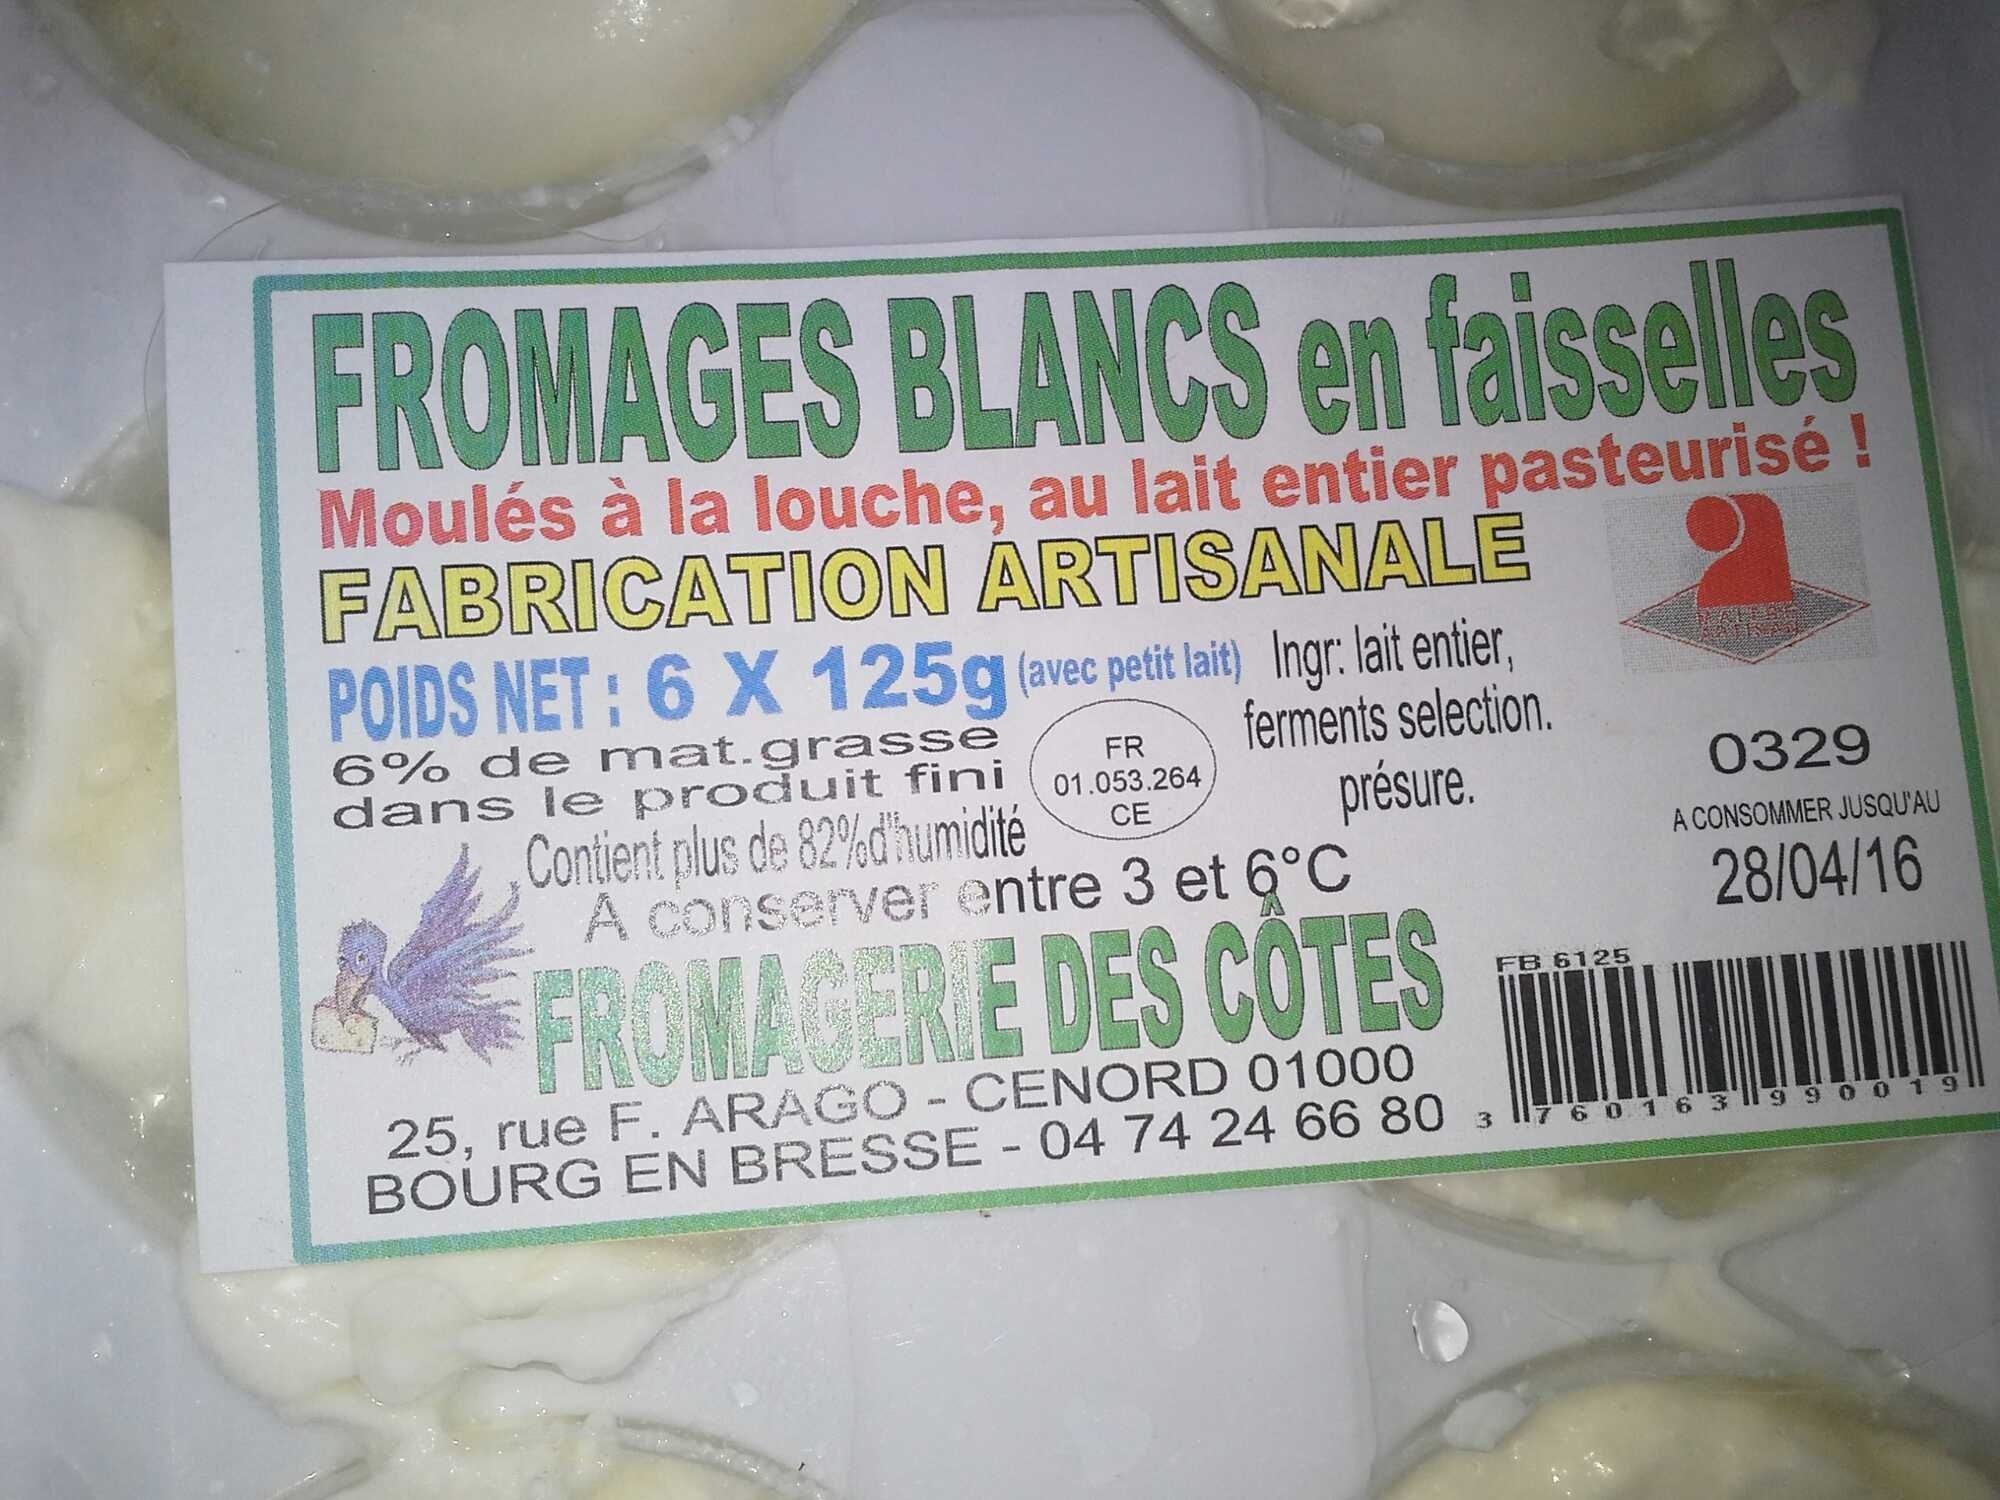 Fromages blancs en faisselles - Product - fr